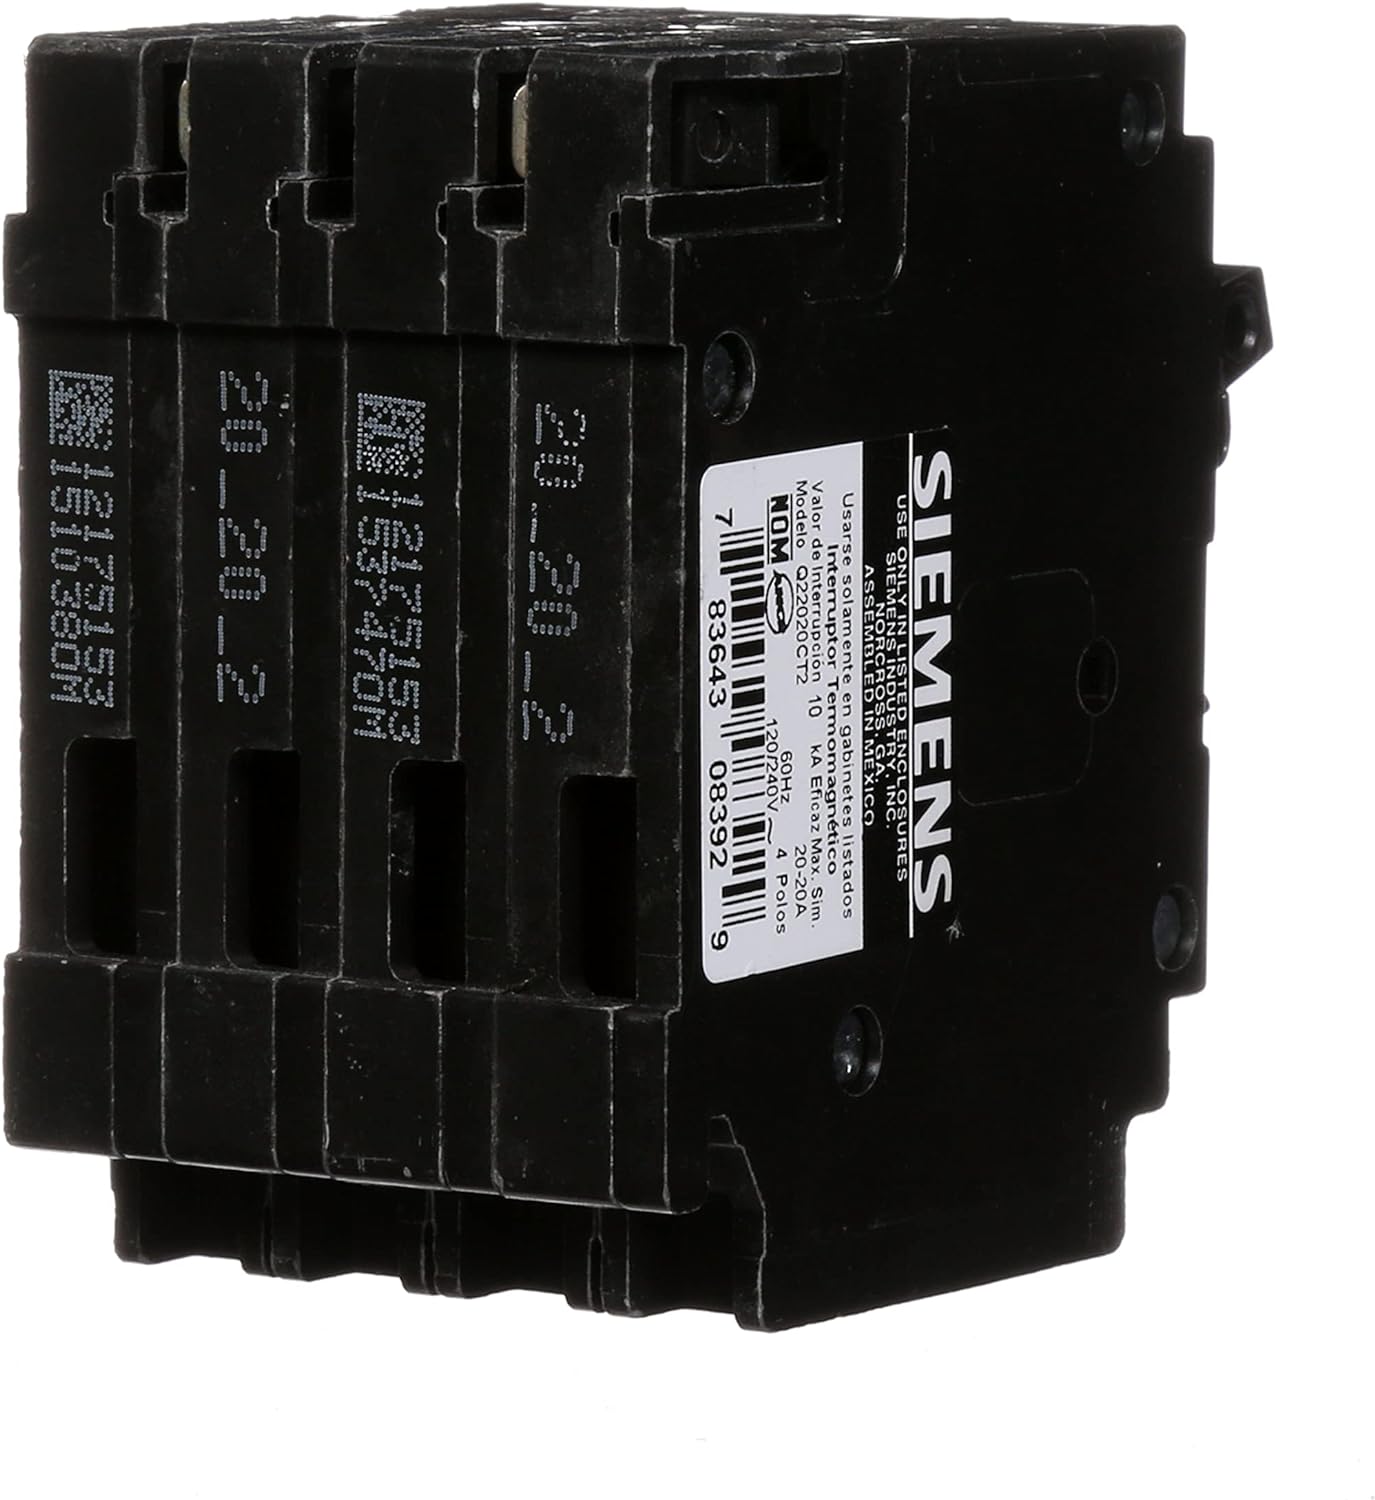 Q22020CT2 - Siemens - 20 Amp Quad Circuit Breaker